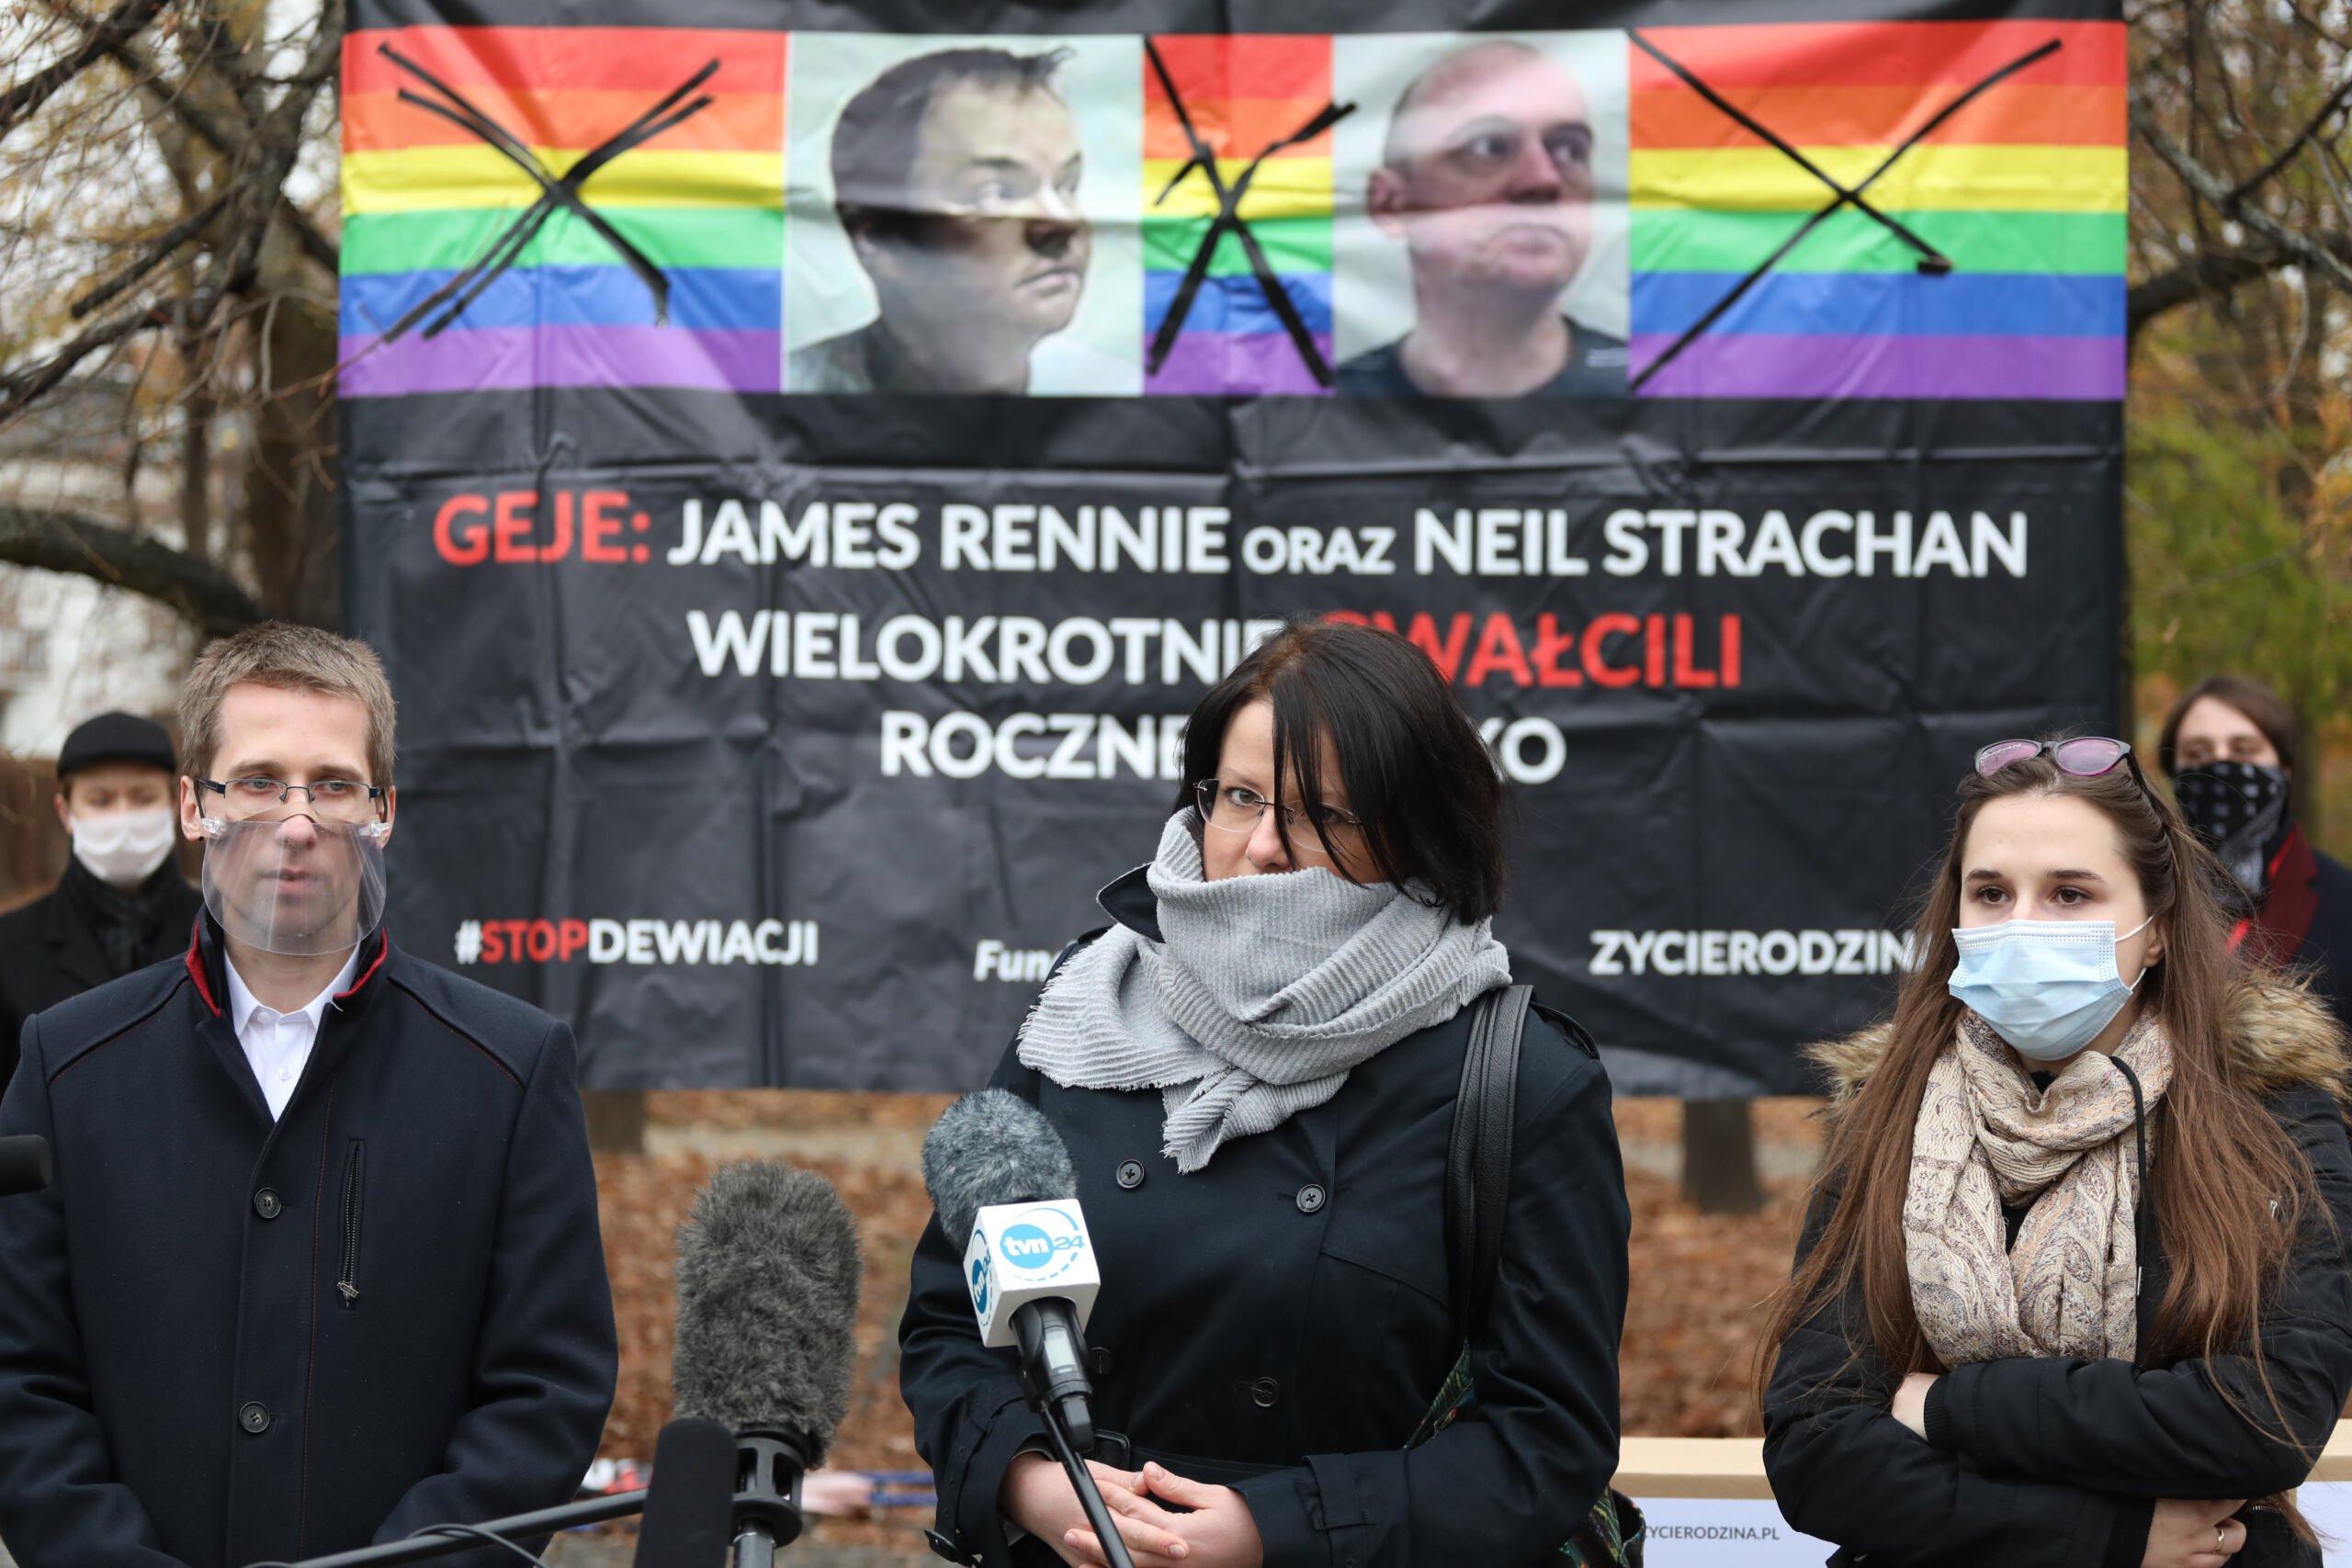 Kaja Godek i komitet "Stop LGBT" składają projekt ustawy zakazującej m.in. parad równości